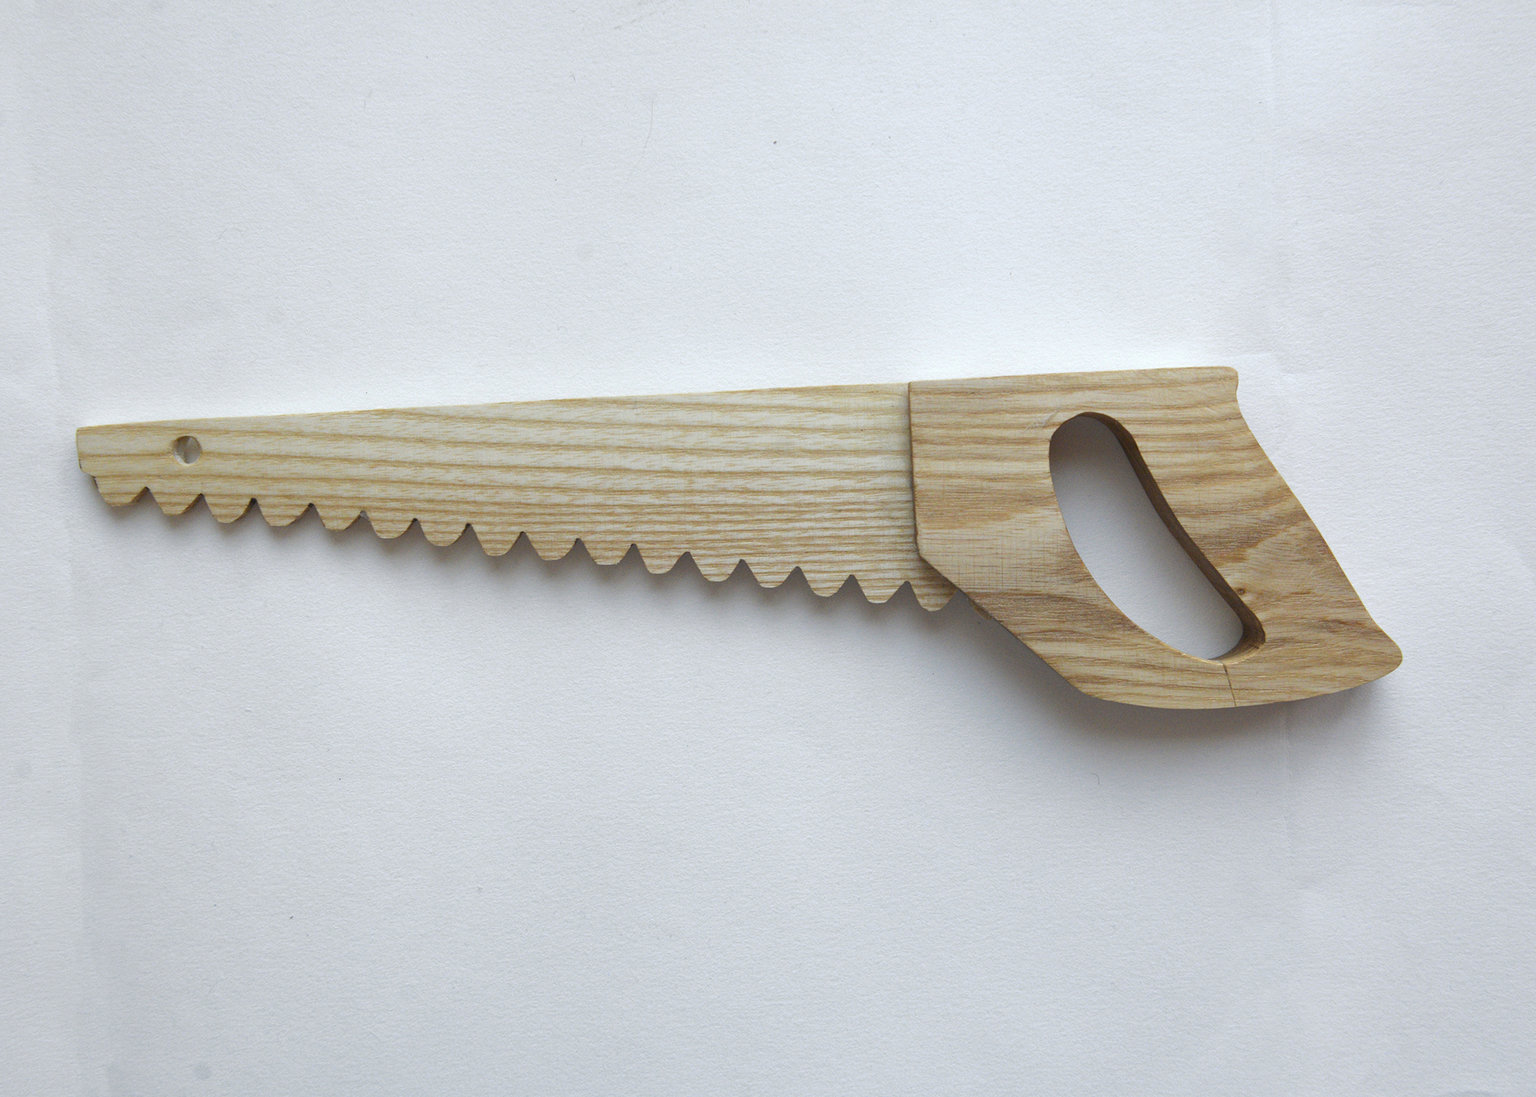 Handmade wooden handsaw